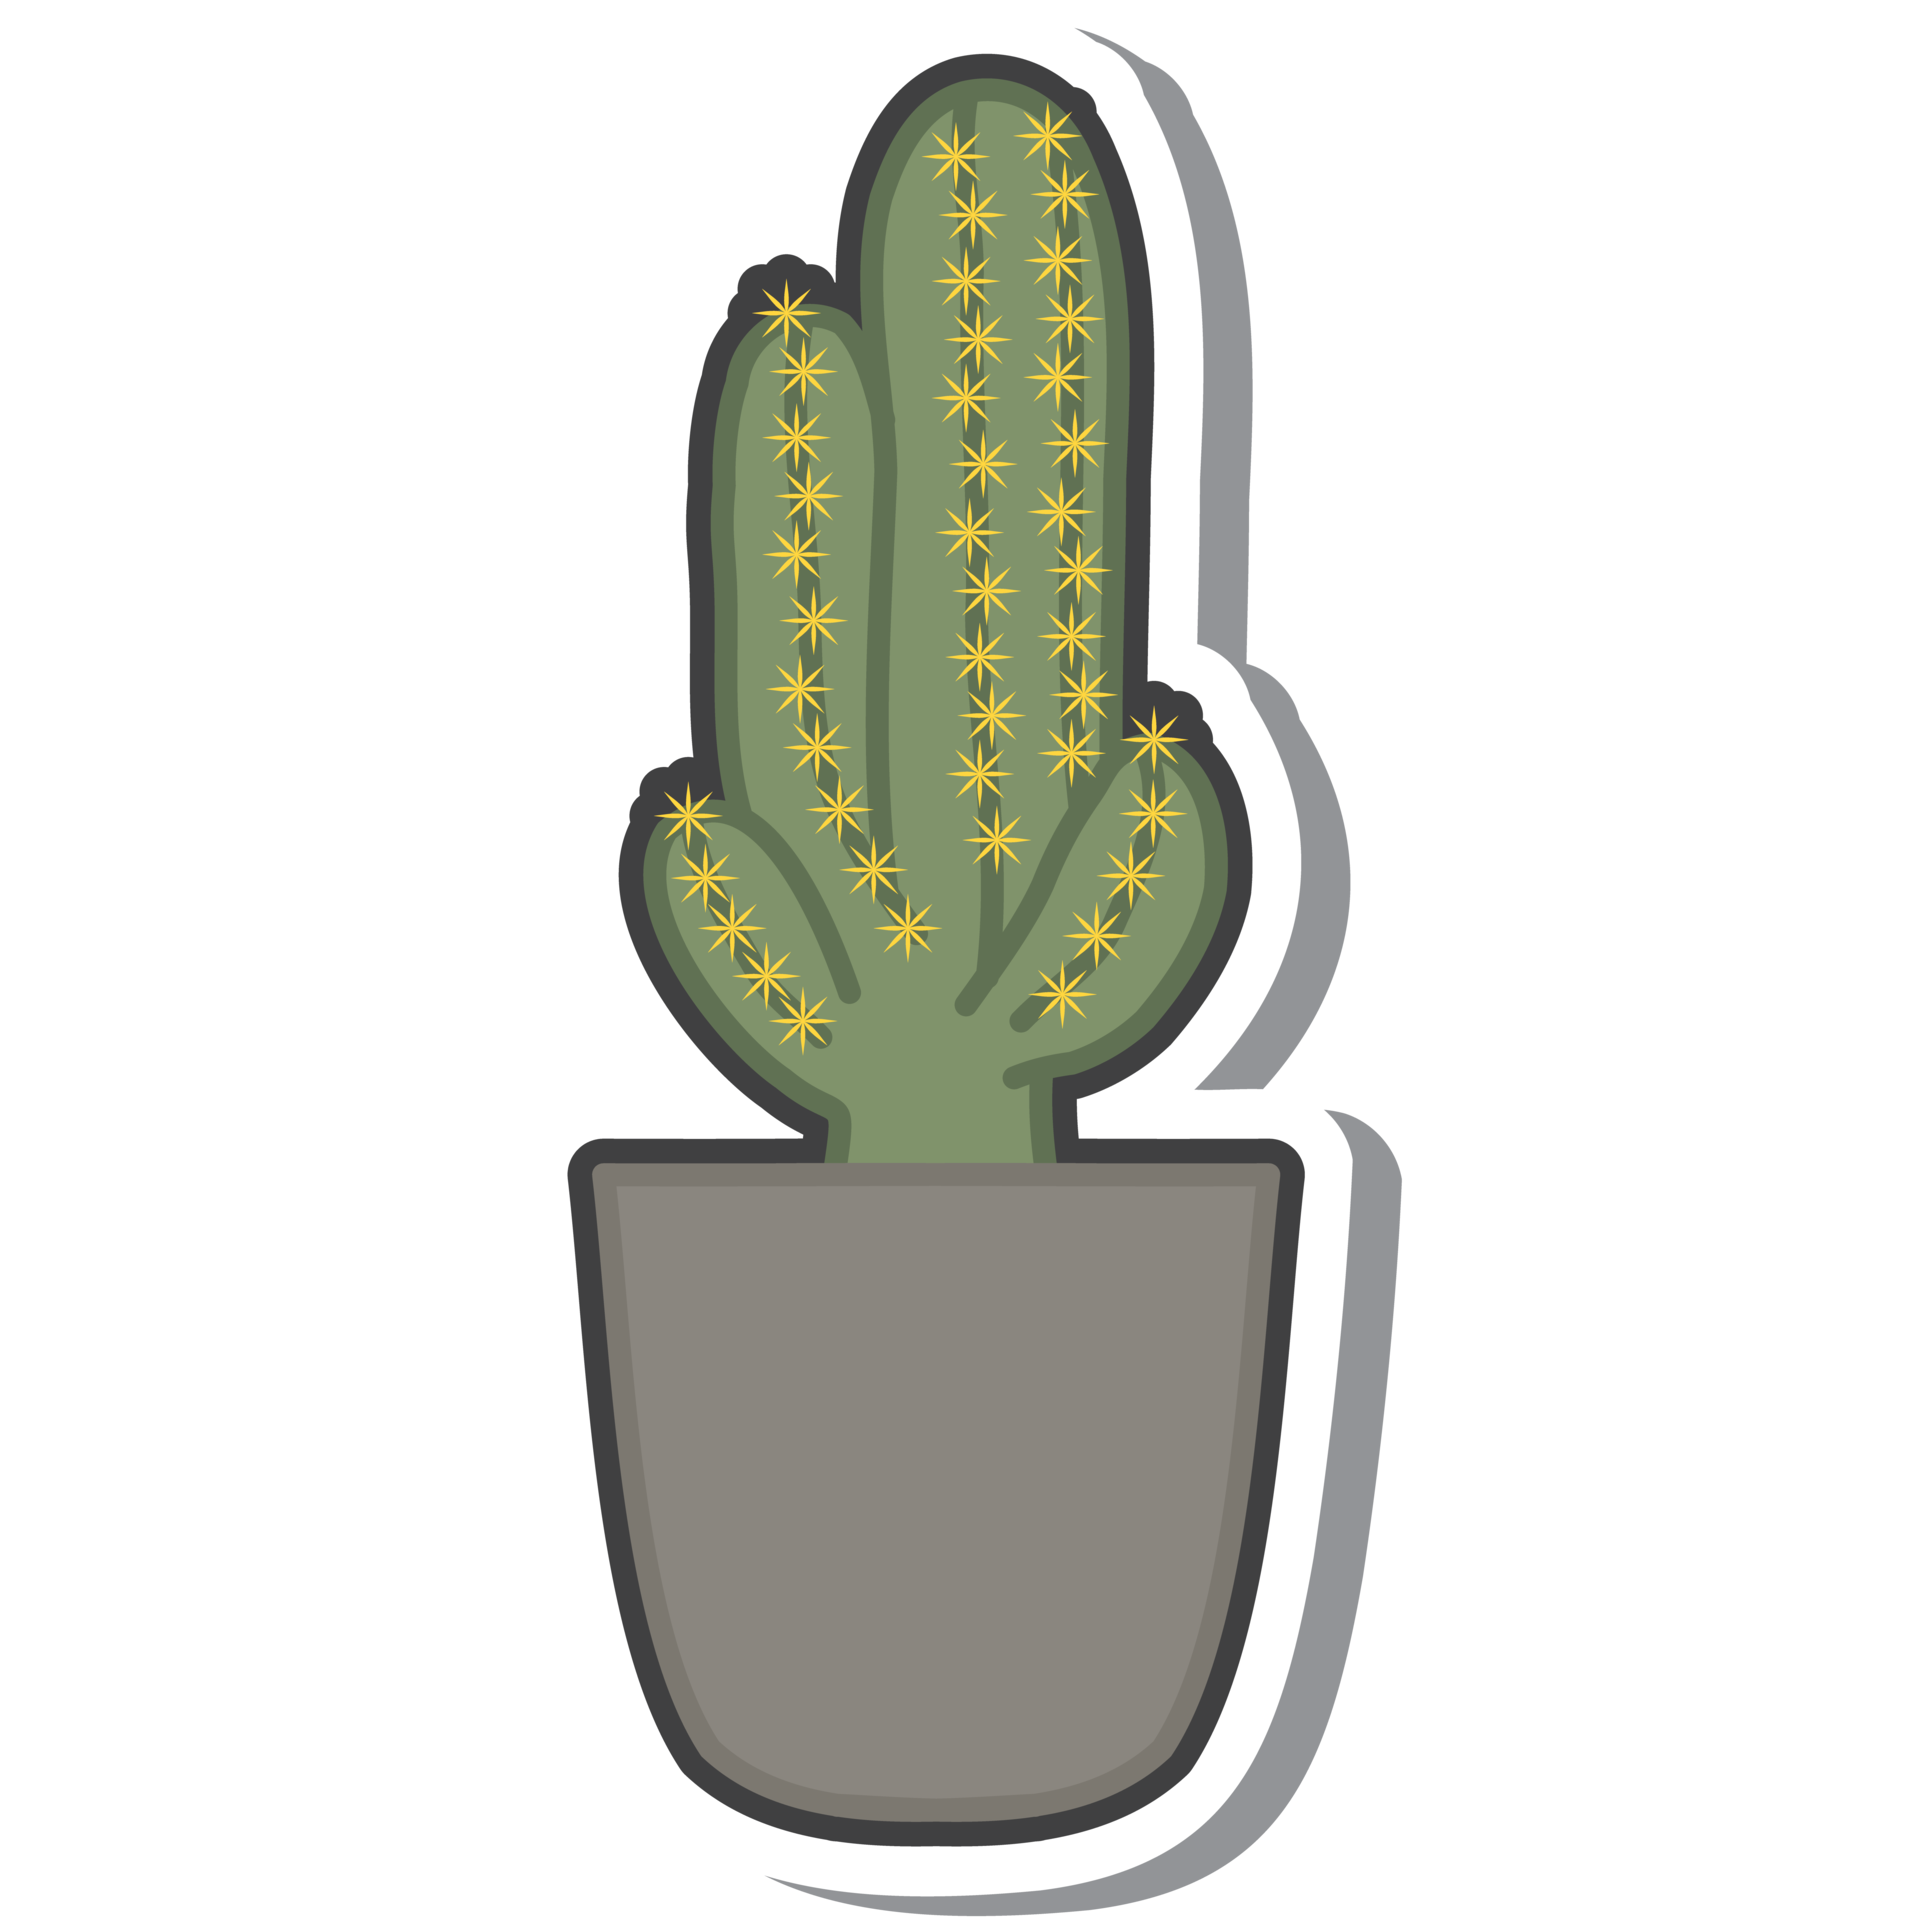 Aesthetic Cute Sticker Vintage Cactus Plants In Vase Bullet ...